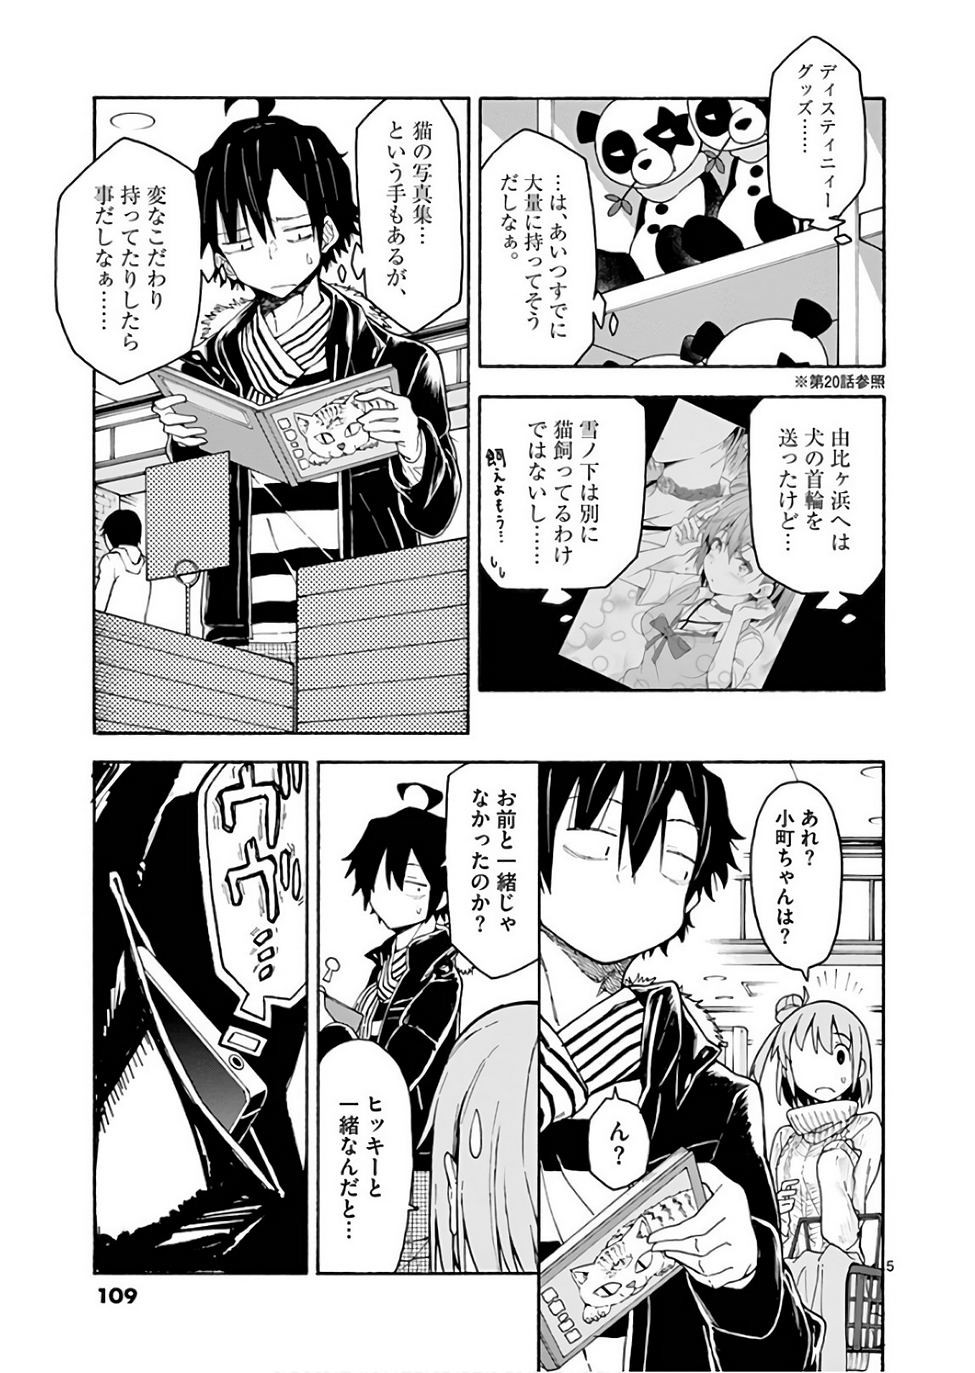 Yahari Ore no Seishun Rabukome wa Machigatte Iru. @ Comic - Chapter 74 - Page 5